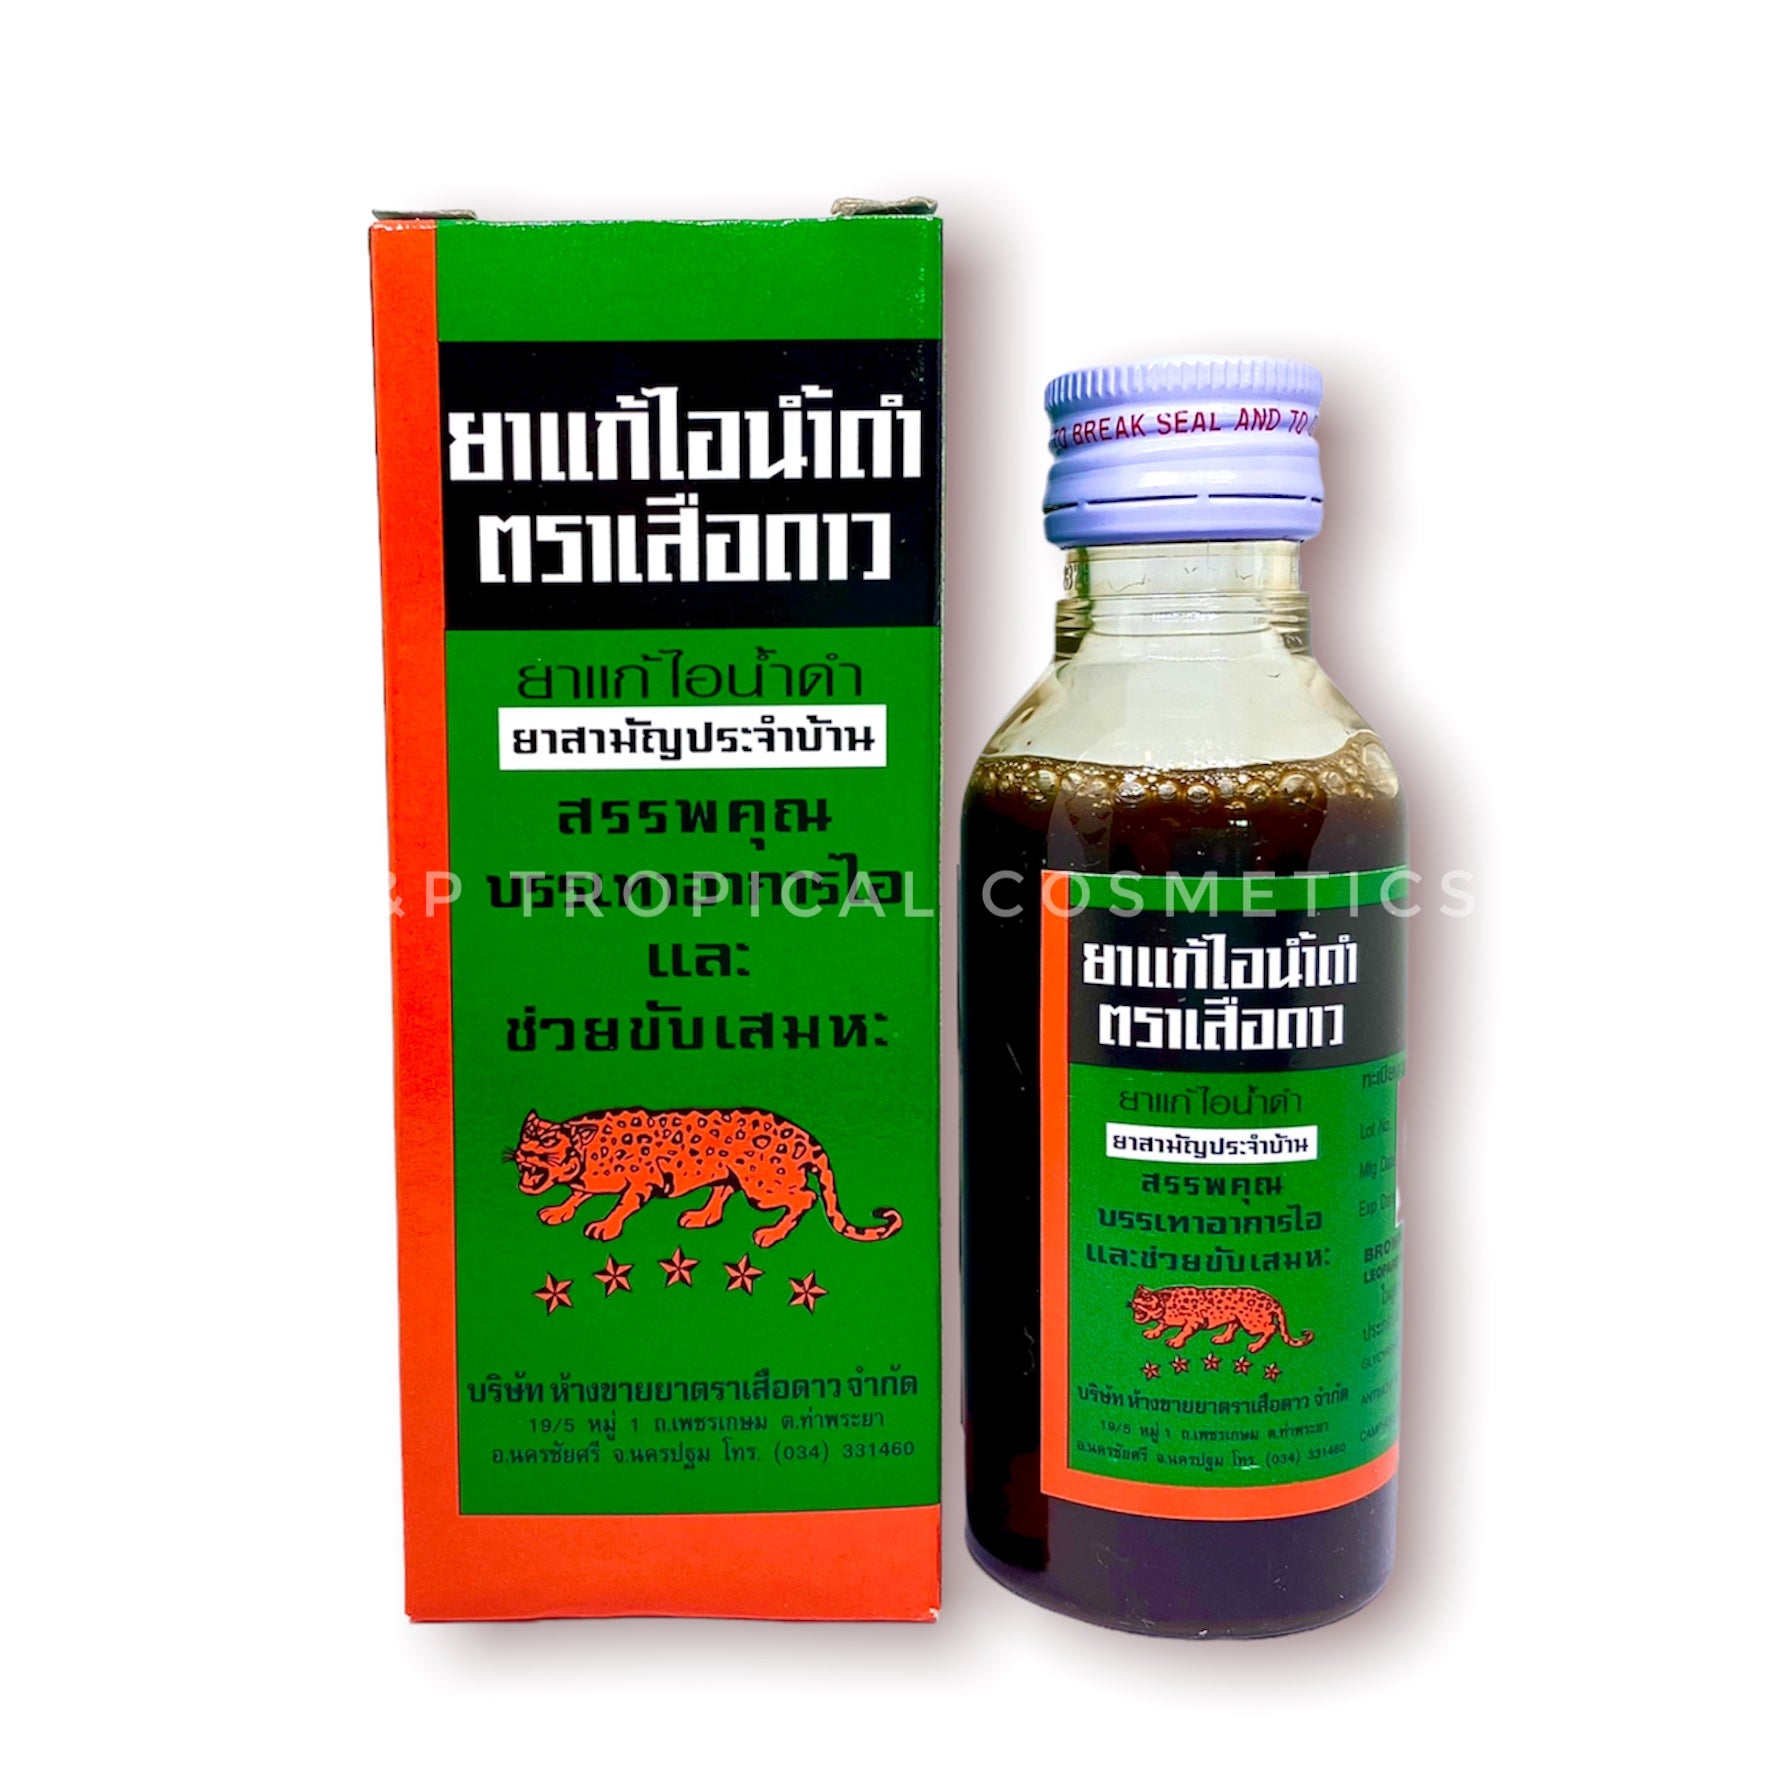 Leopard Brand Cough Syrup 60 ml., Микстура от кашля на основе солодки 60 мл